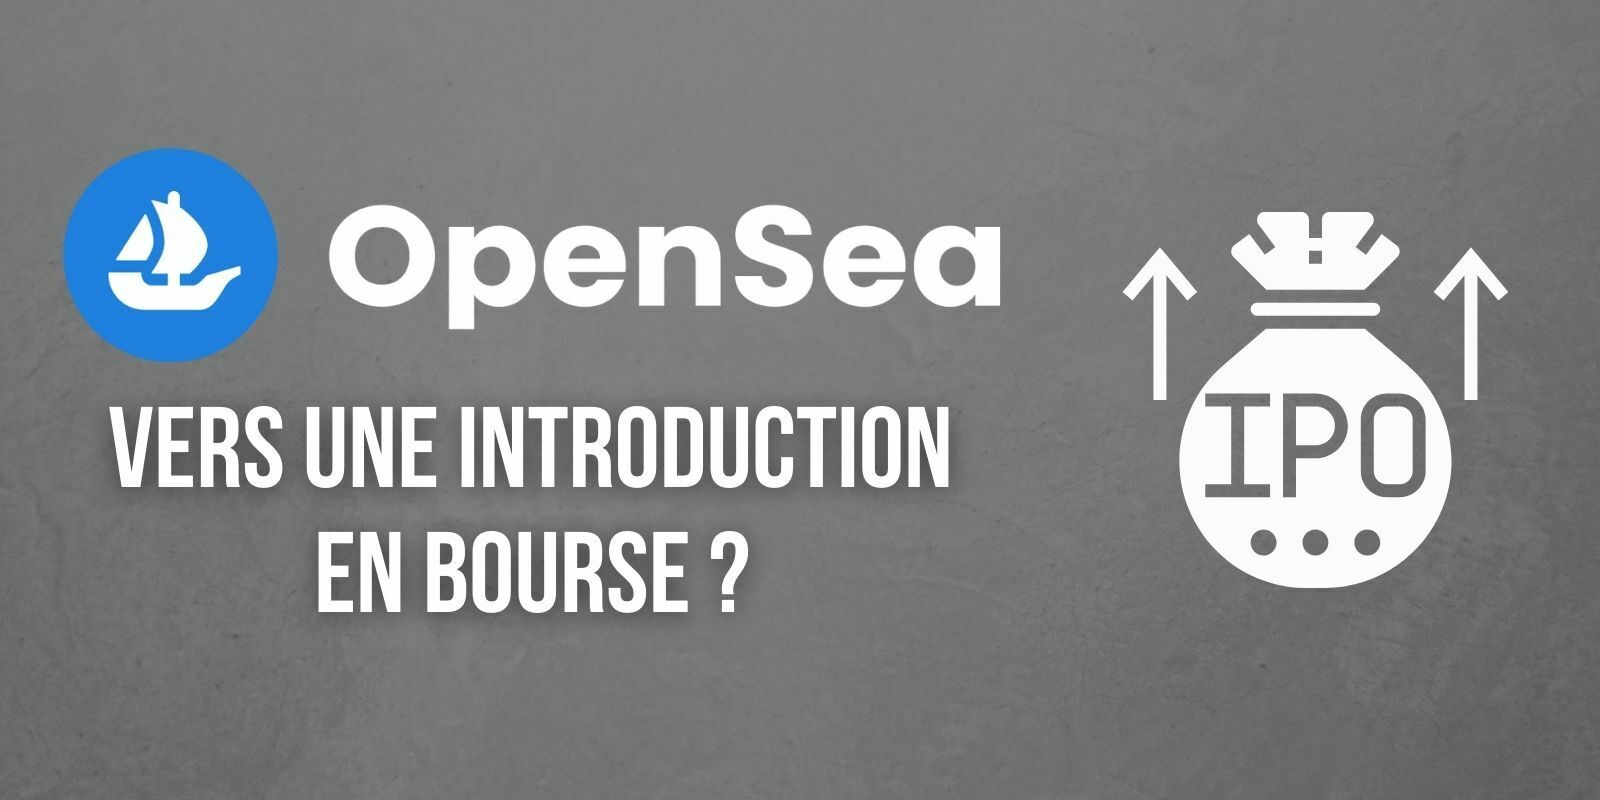 OpenSea recrute un nouveau directeur financier et prévoit une introduction en bourse